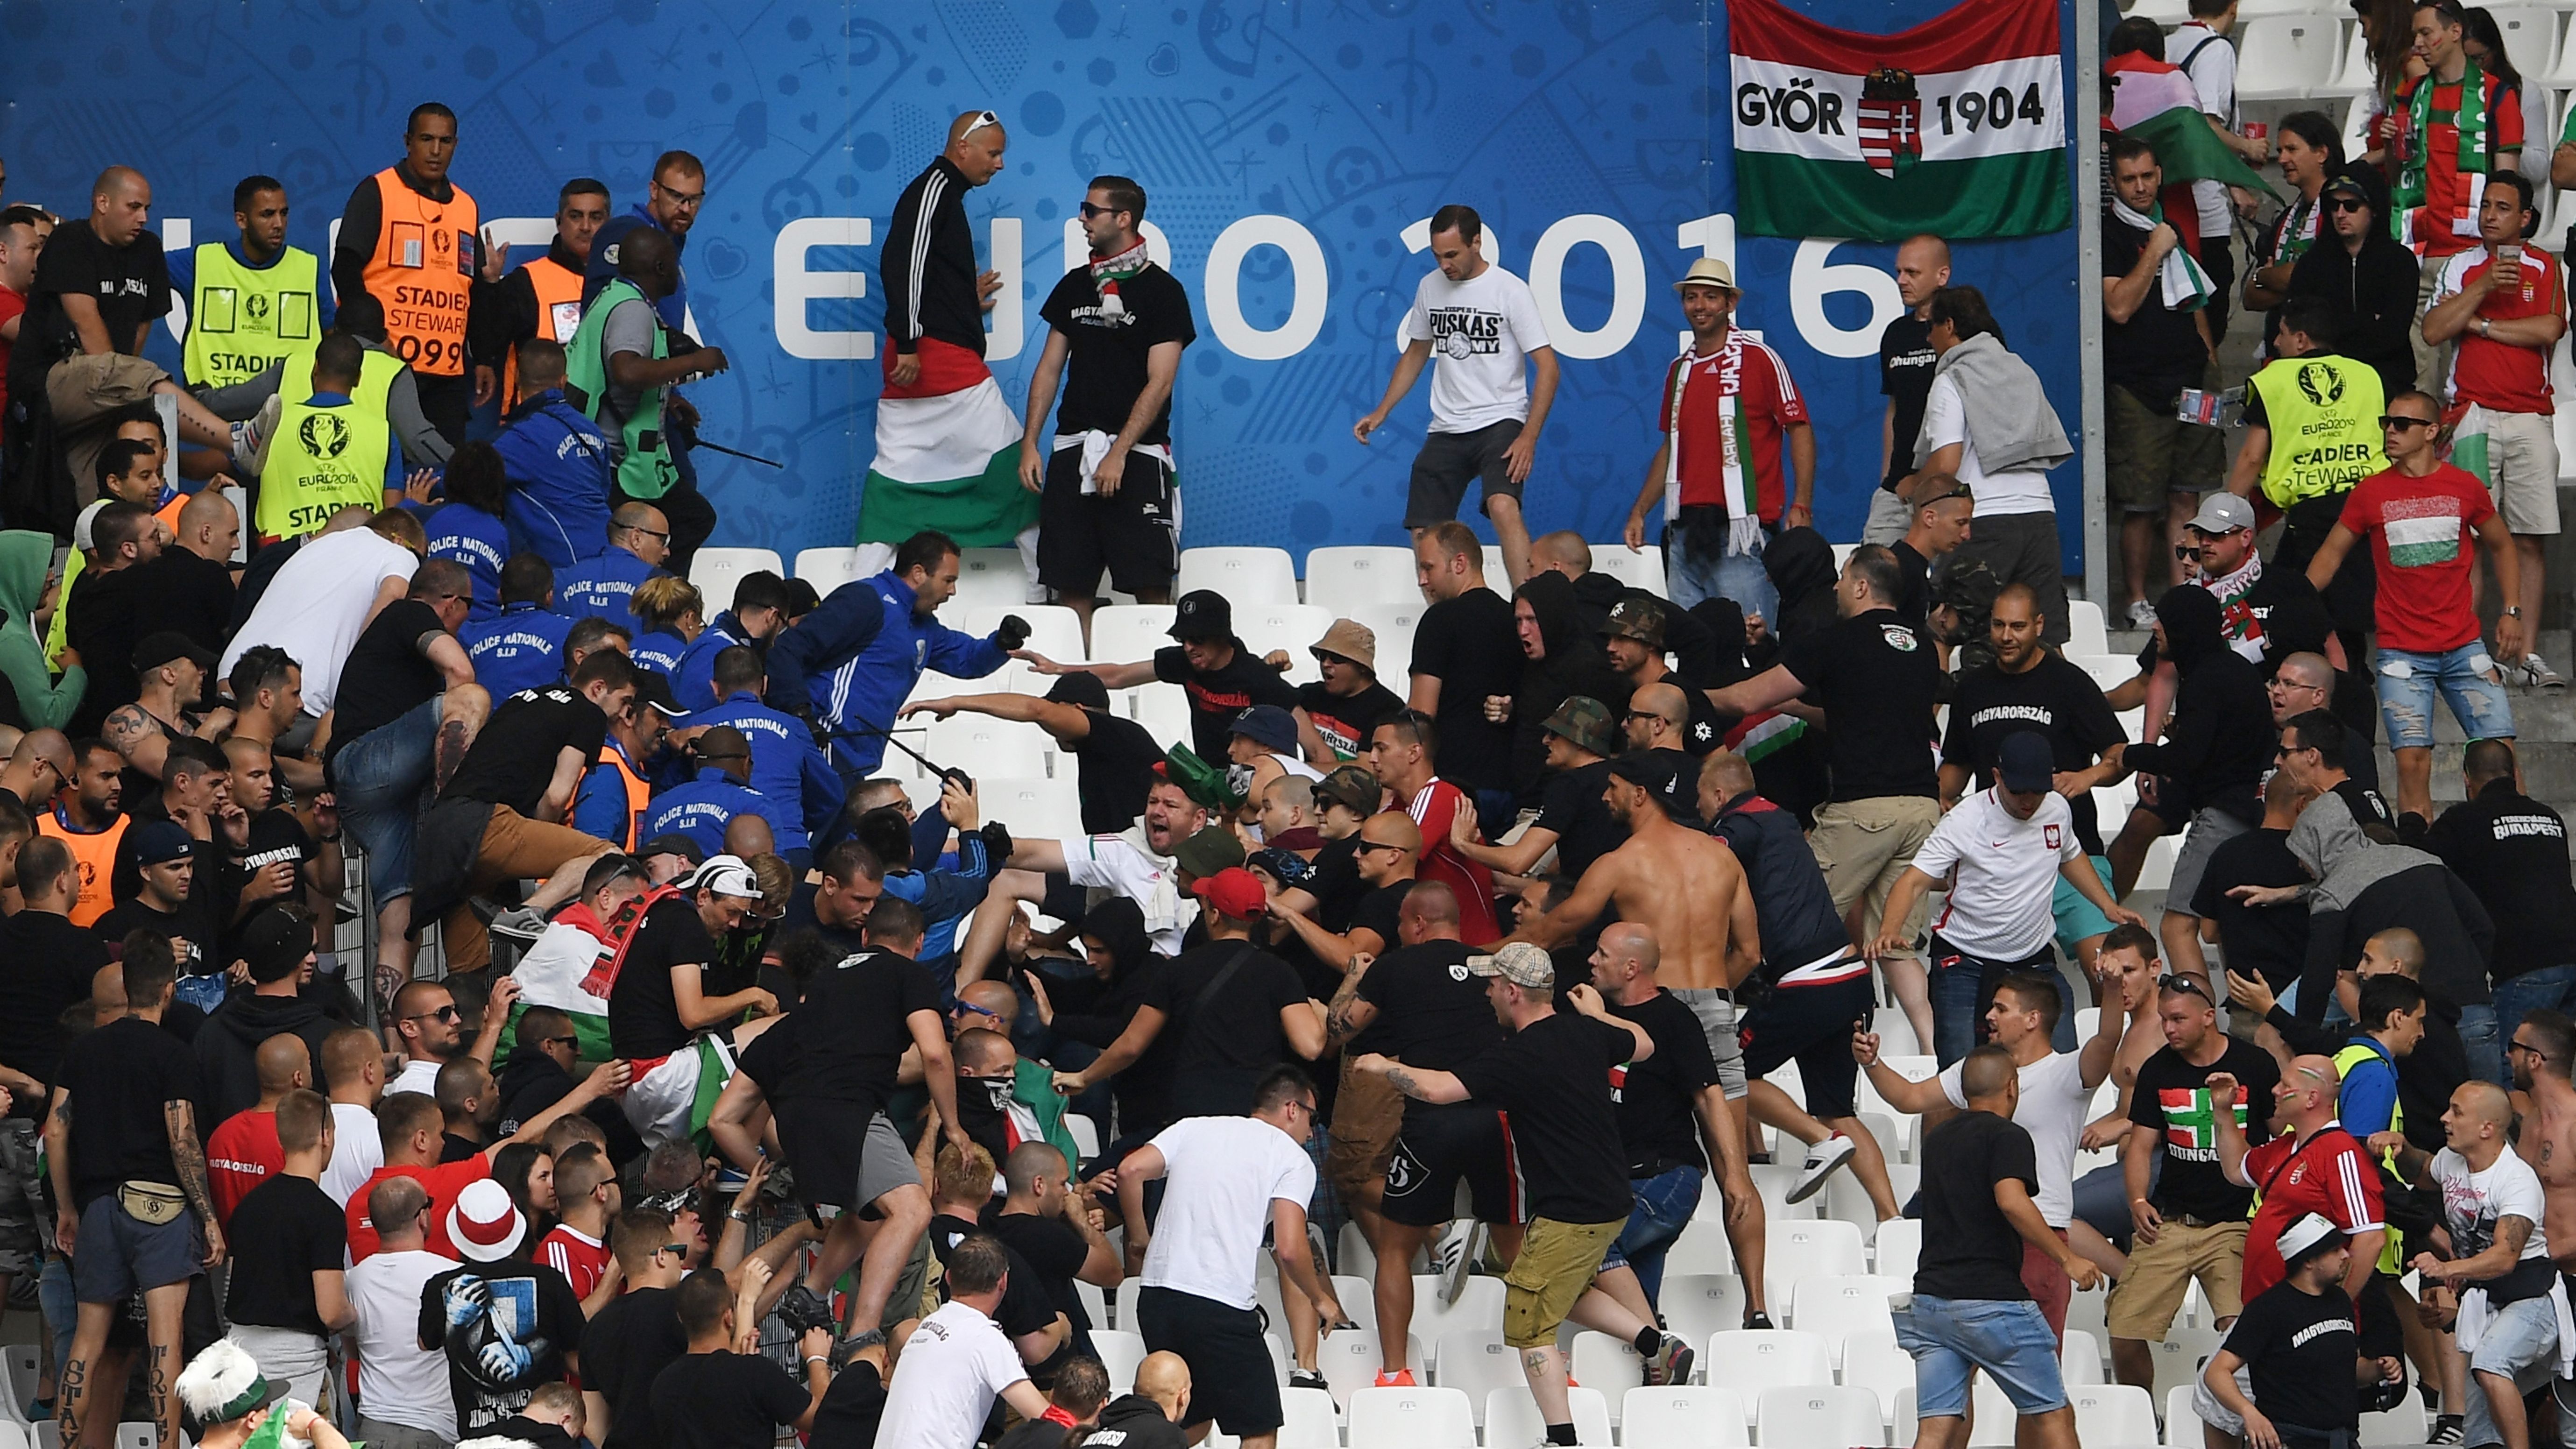 Євро-2016: Фанати Угорщини влаштували масову бійку на стадіоні 